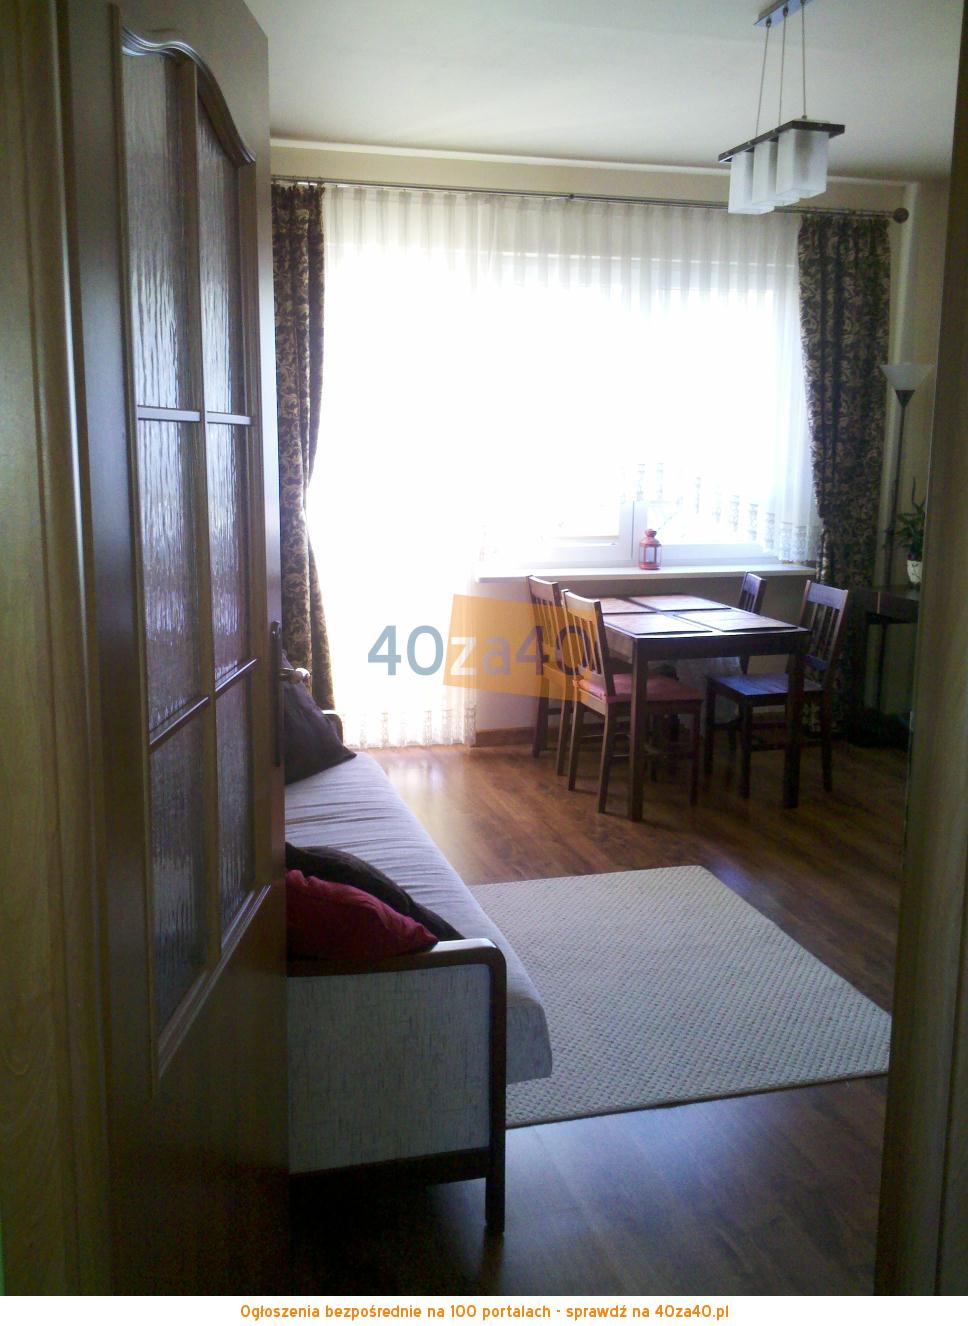 Mieszkanie do wynajęcia, pokoje: 2, cena: 1 300,00 PLN, Gdynia, kontakt: 607974938, 609744899